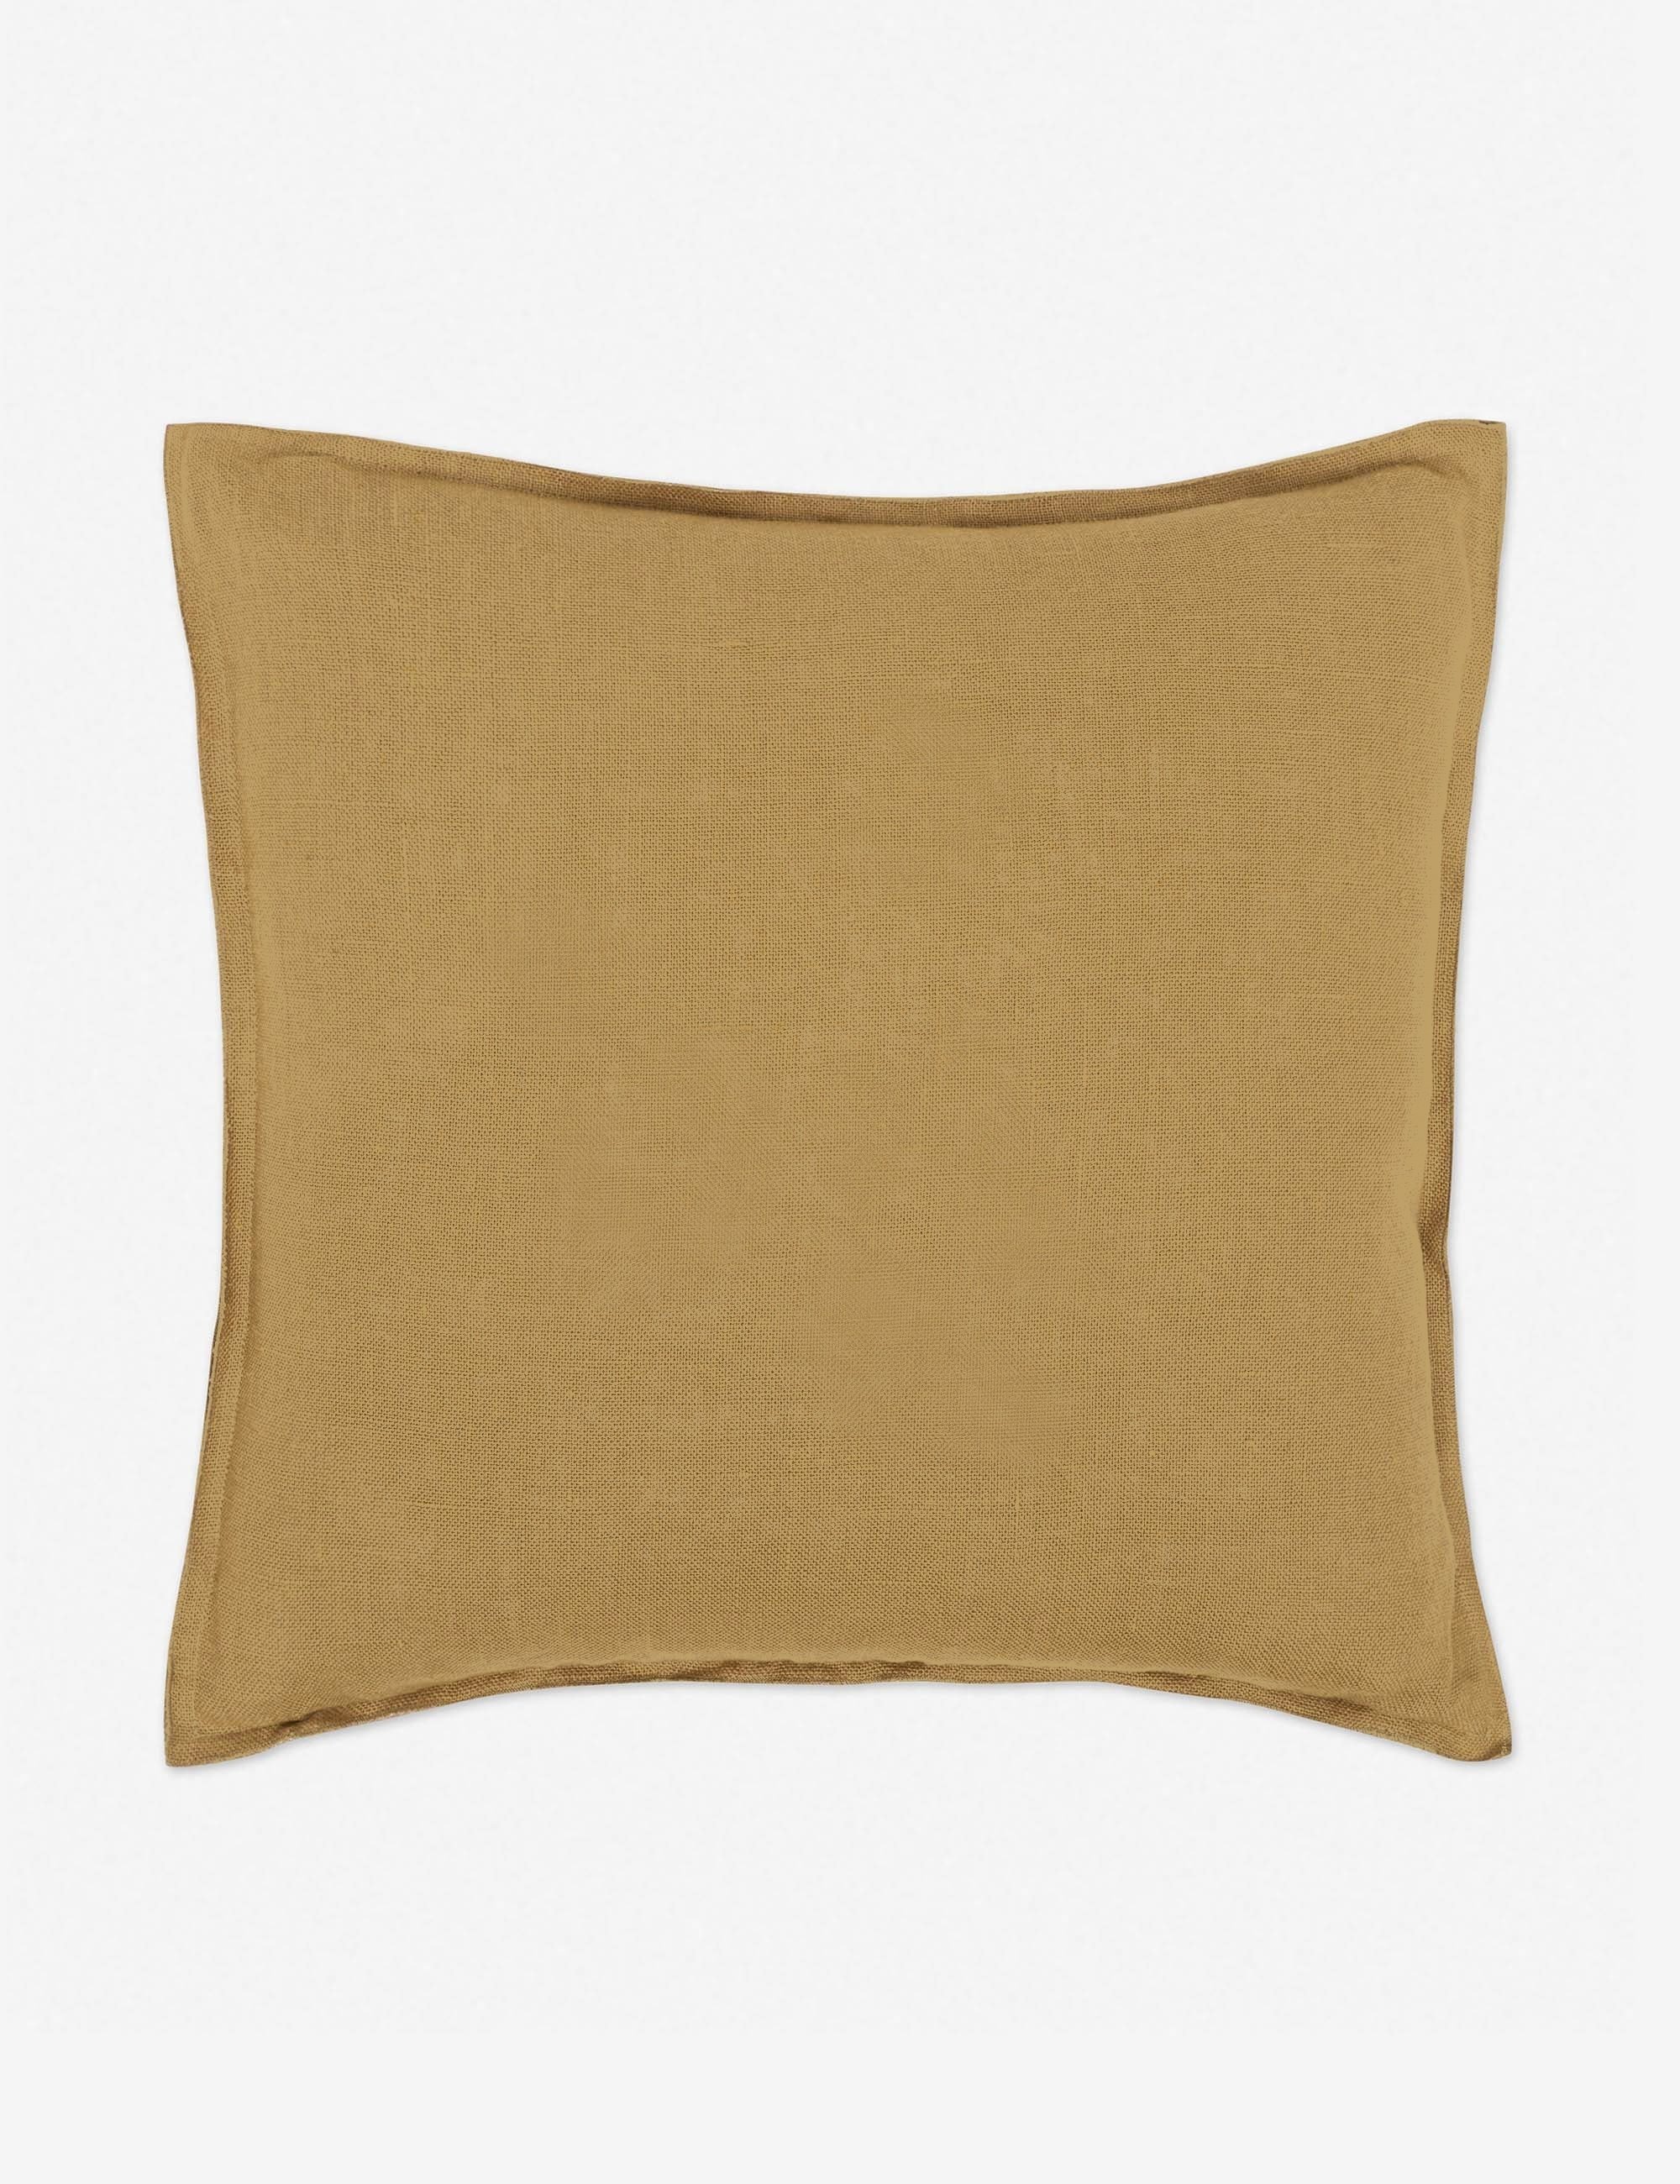 Arlo Linen Pillow, Marigold - Image 2